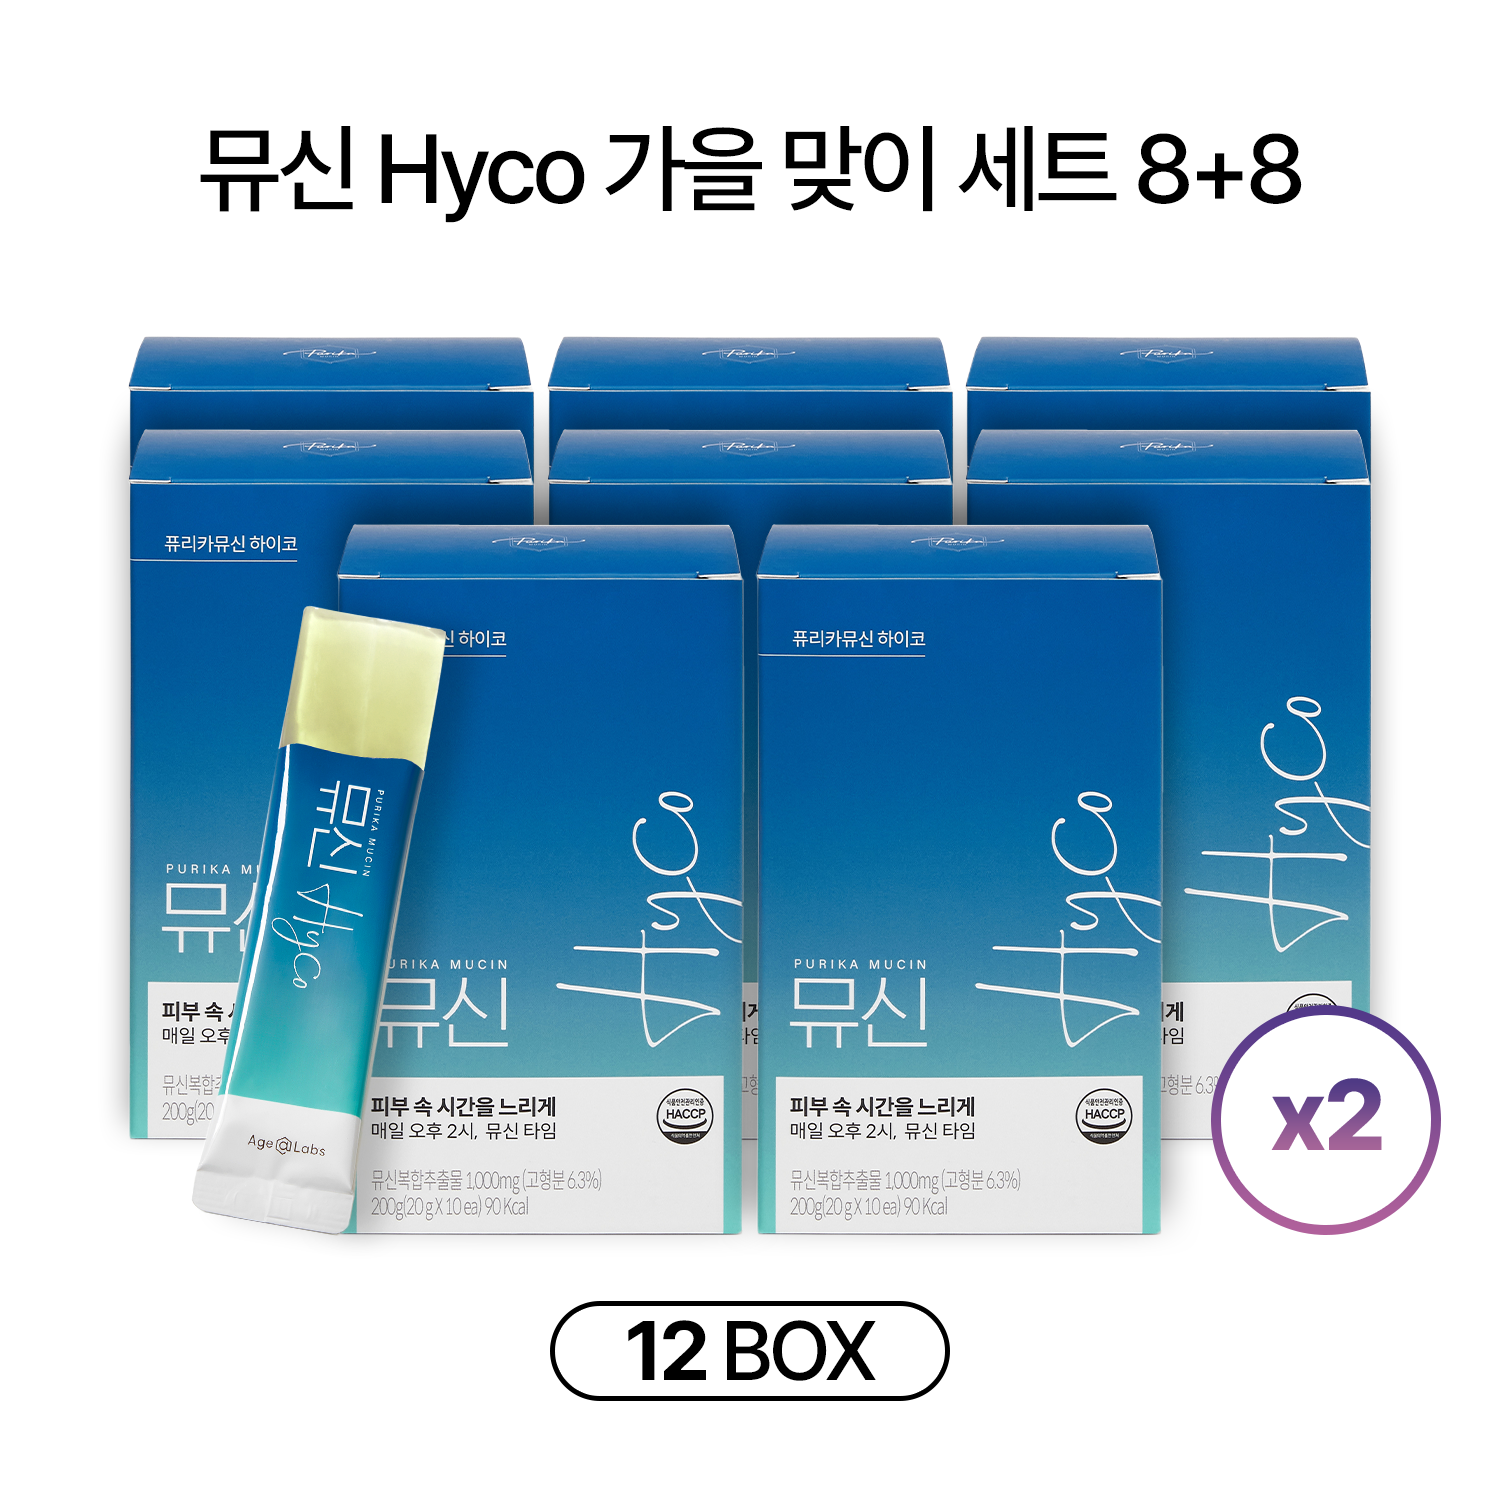 [기간한정] 뮤신 Hyco 8+8 가을 맞이 세트 (16box,160일)